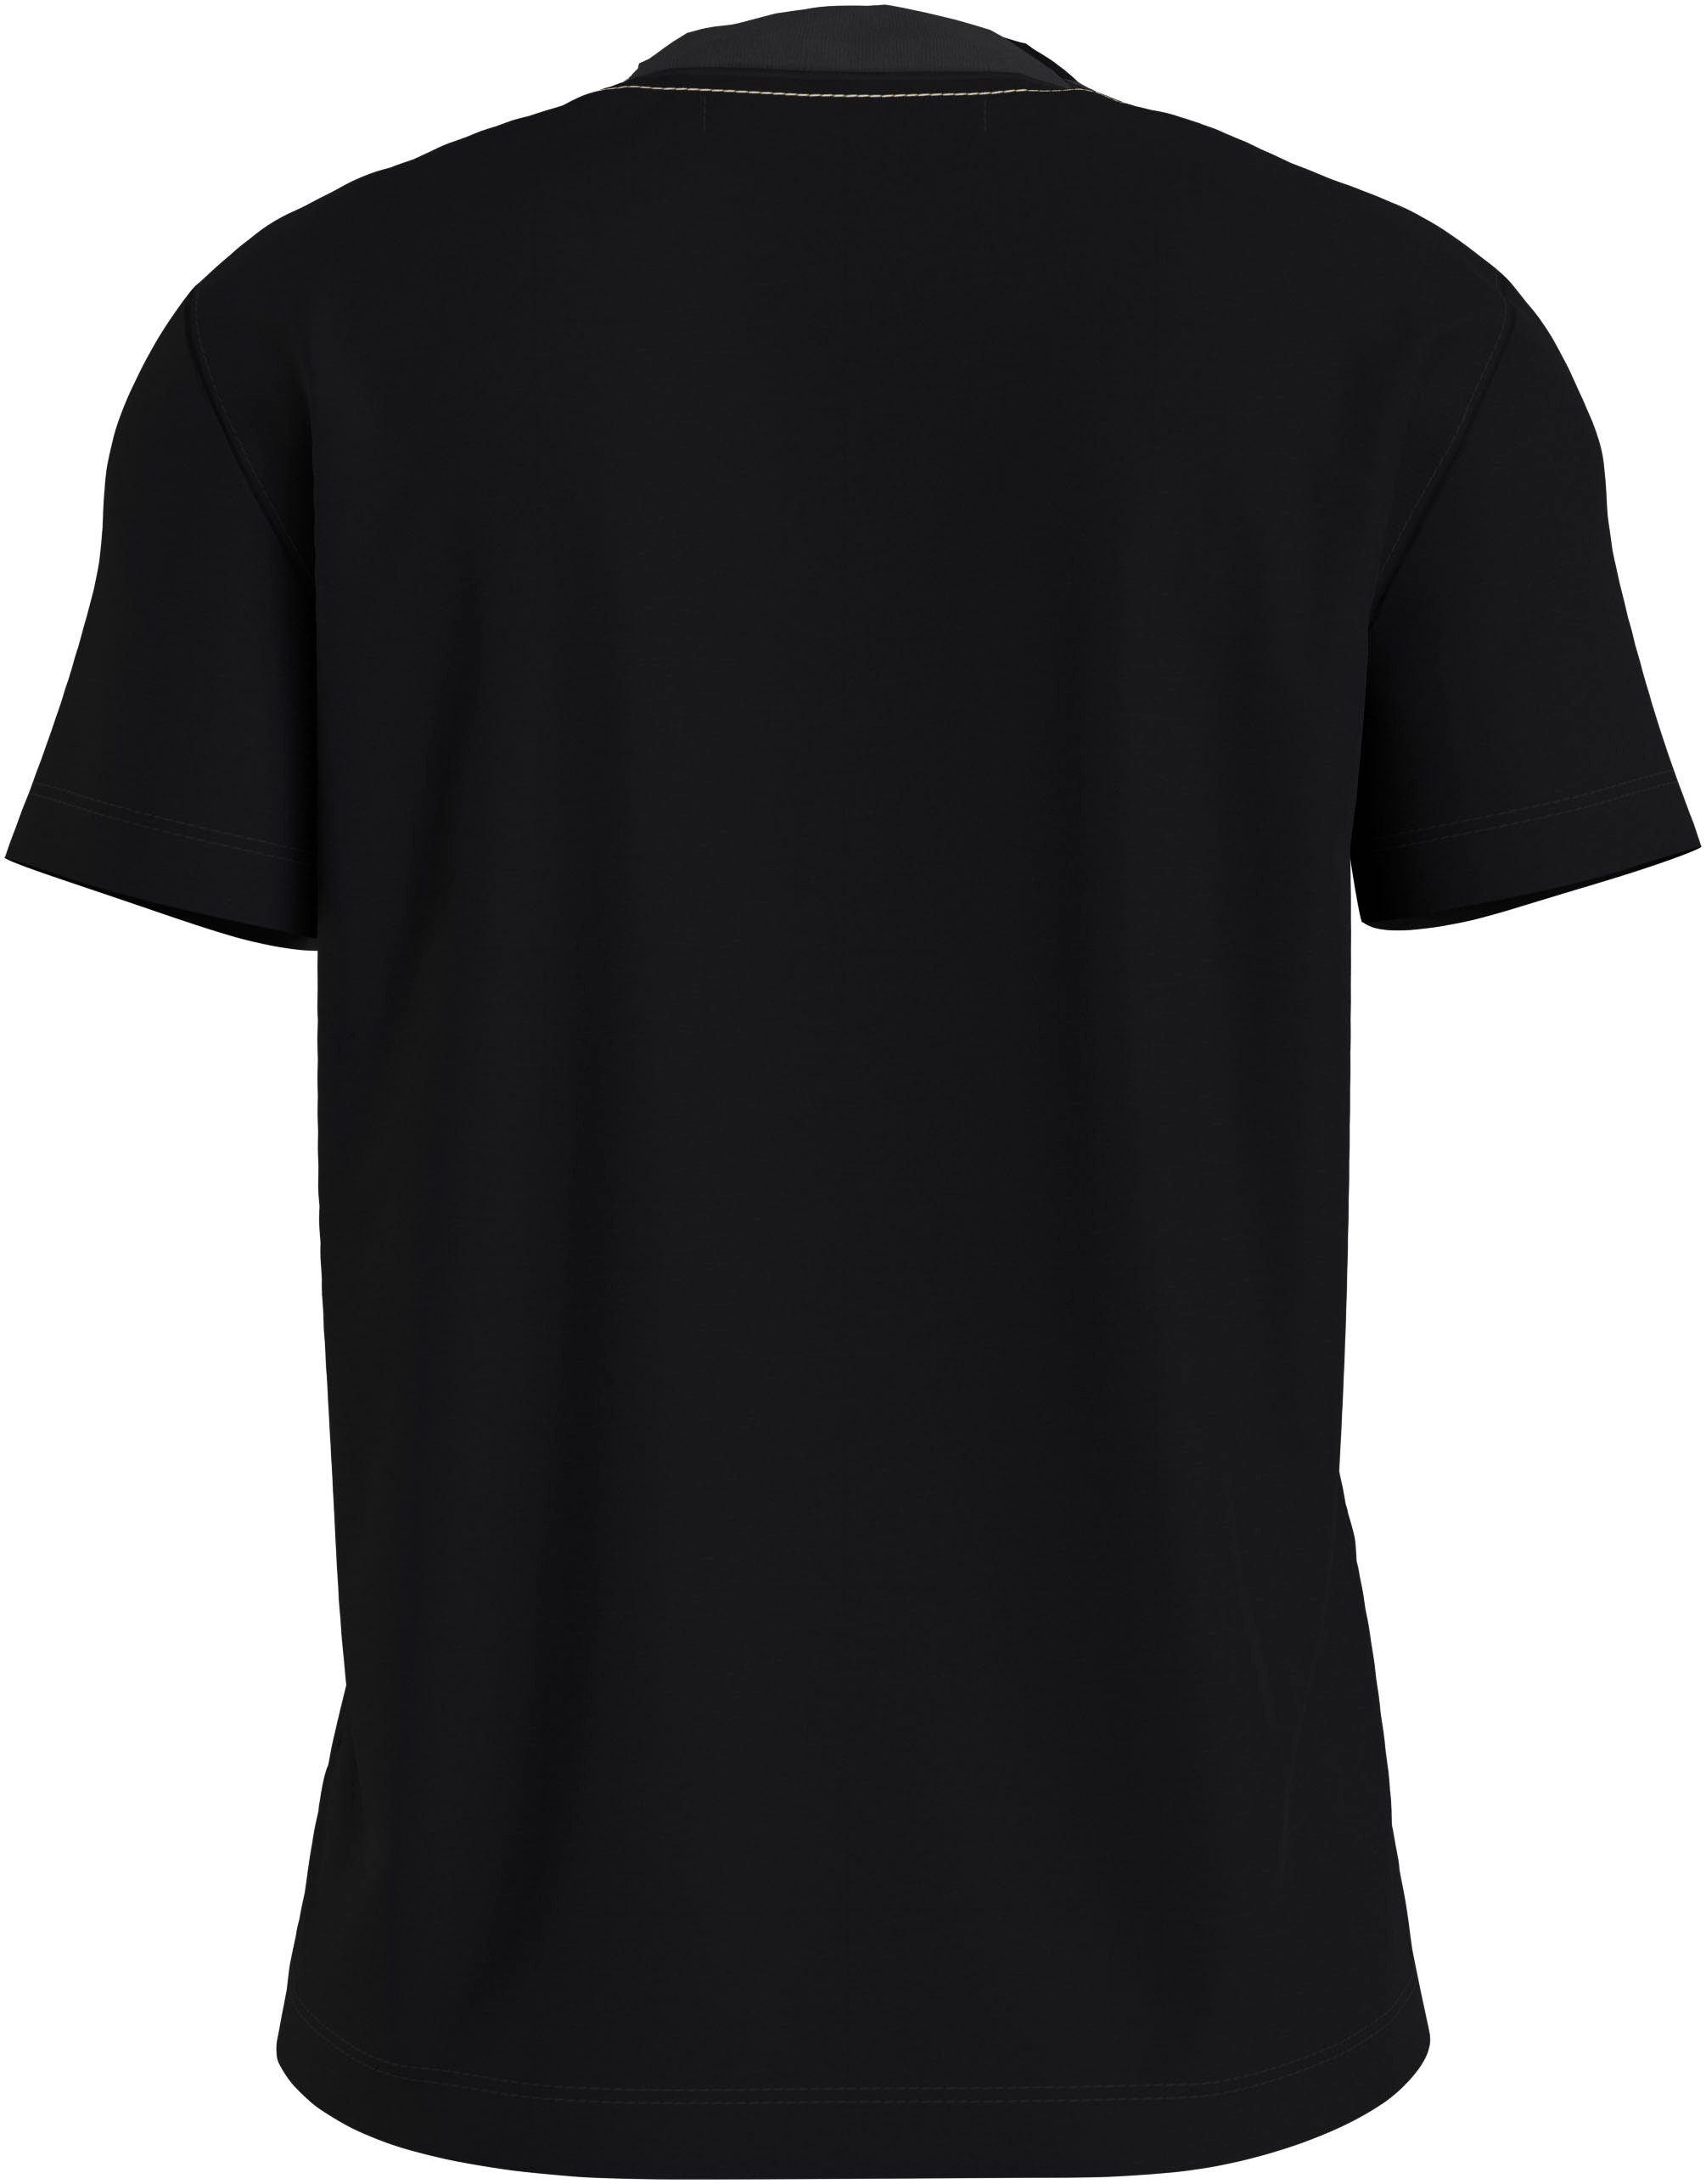 T-Shirt NECKLINE Black Jeans Klein TEE Calvin EMBROIDERED Ck